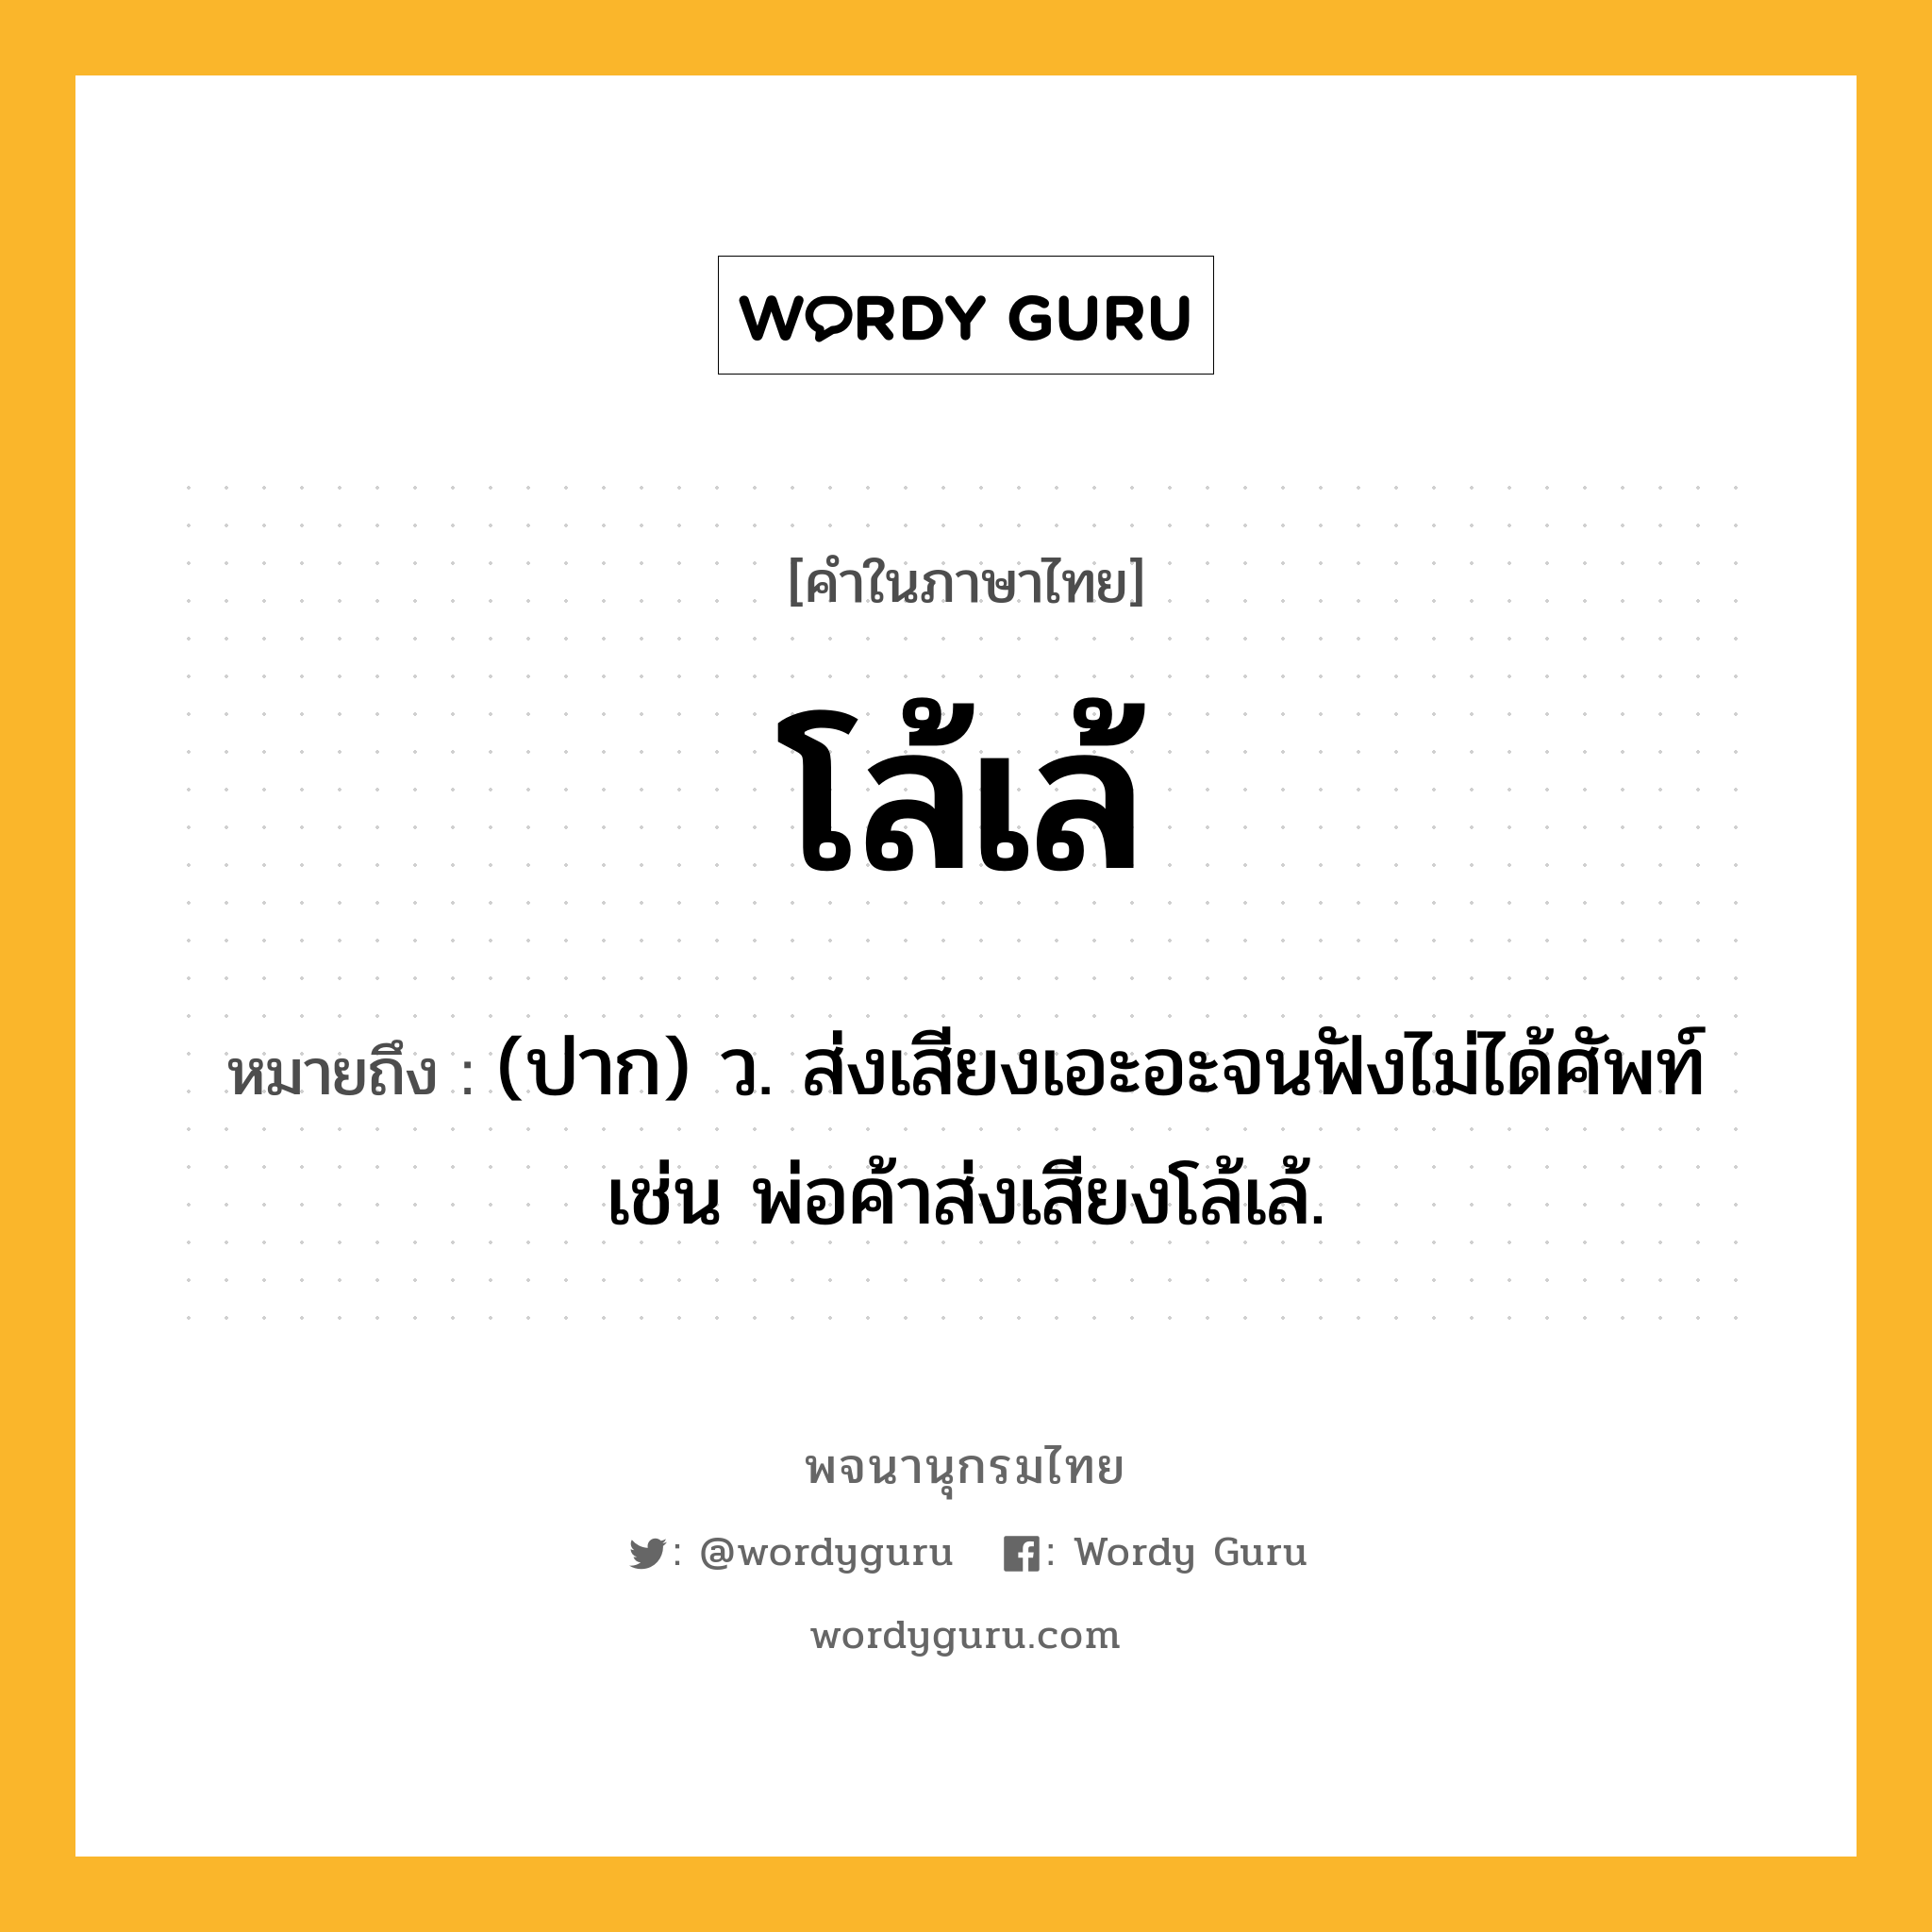 โล้เล้ หมายถึงอะไร?, คำในภาษาไทย โล้เล้ หมายถึง (ปาก) ว. ส่งเสียงเอะอะจนฟังไม่ได้ศัพท์ เช่น พ่อค้าส่งเสียงโล้เล้.